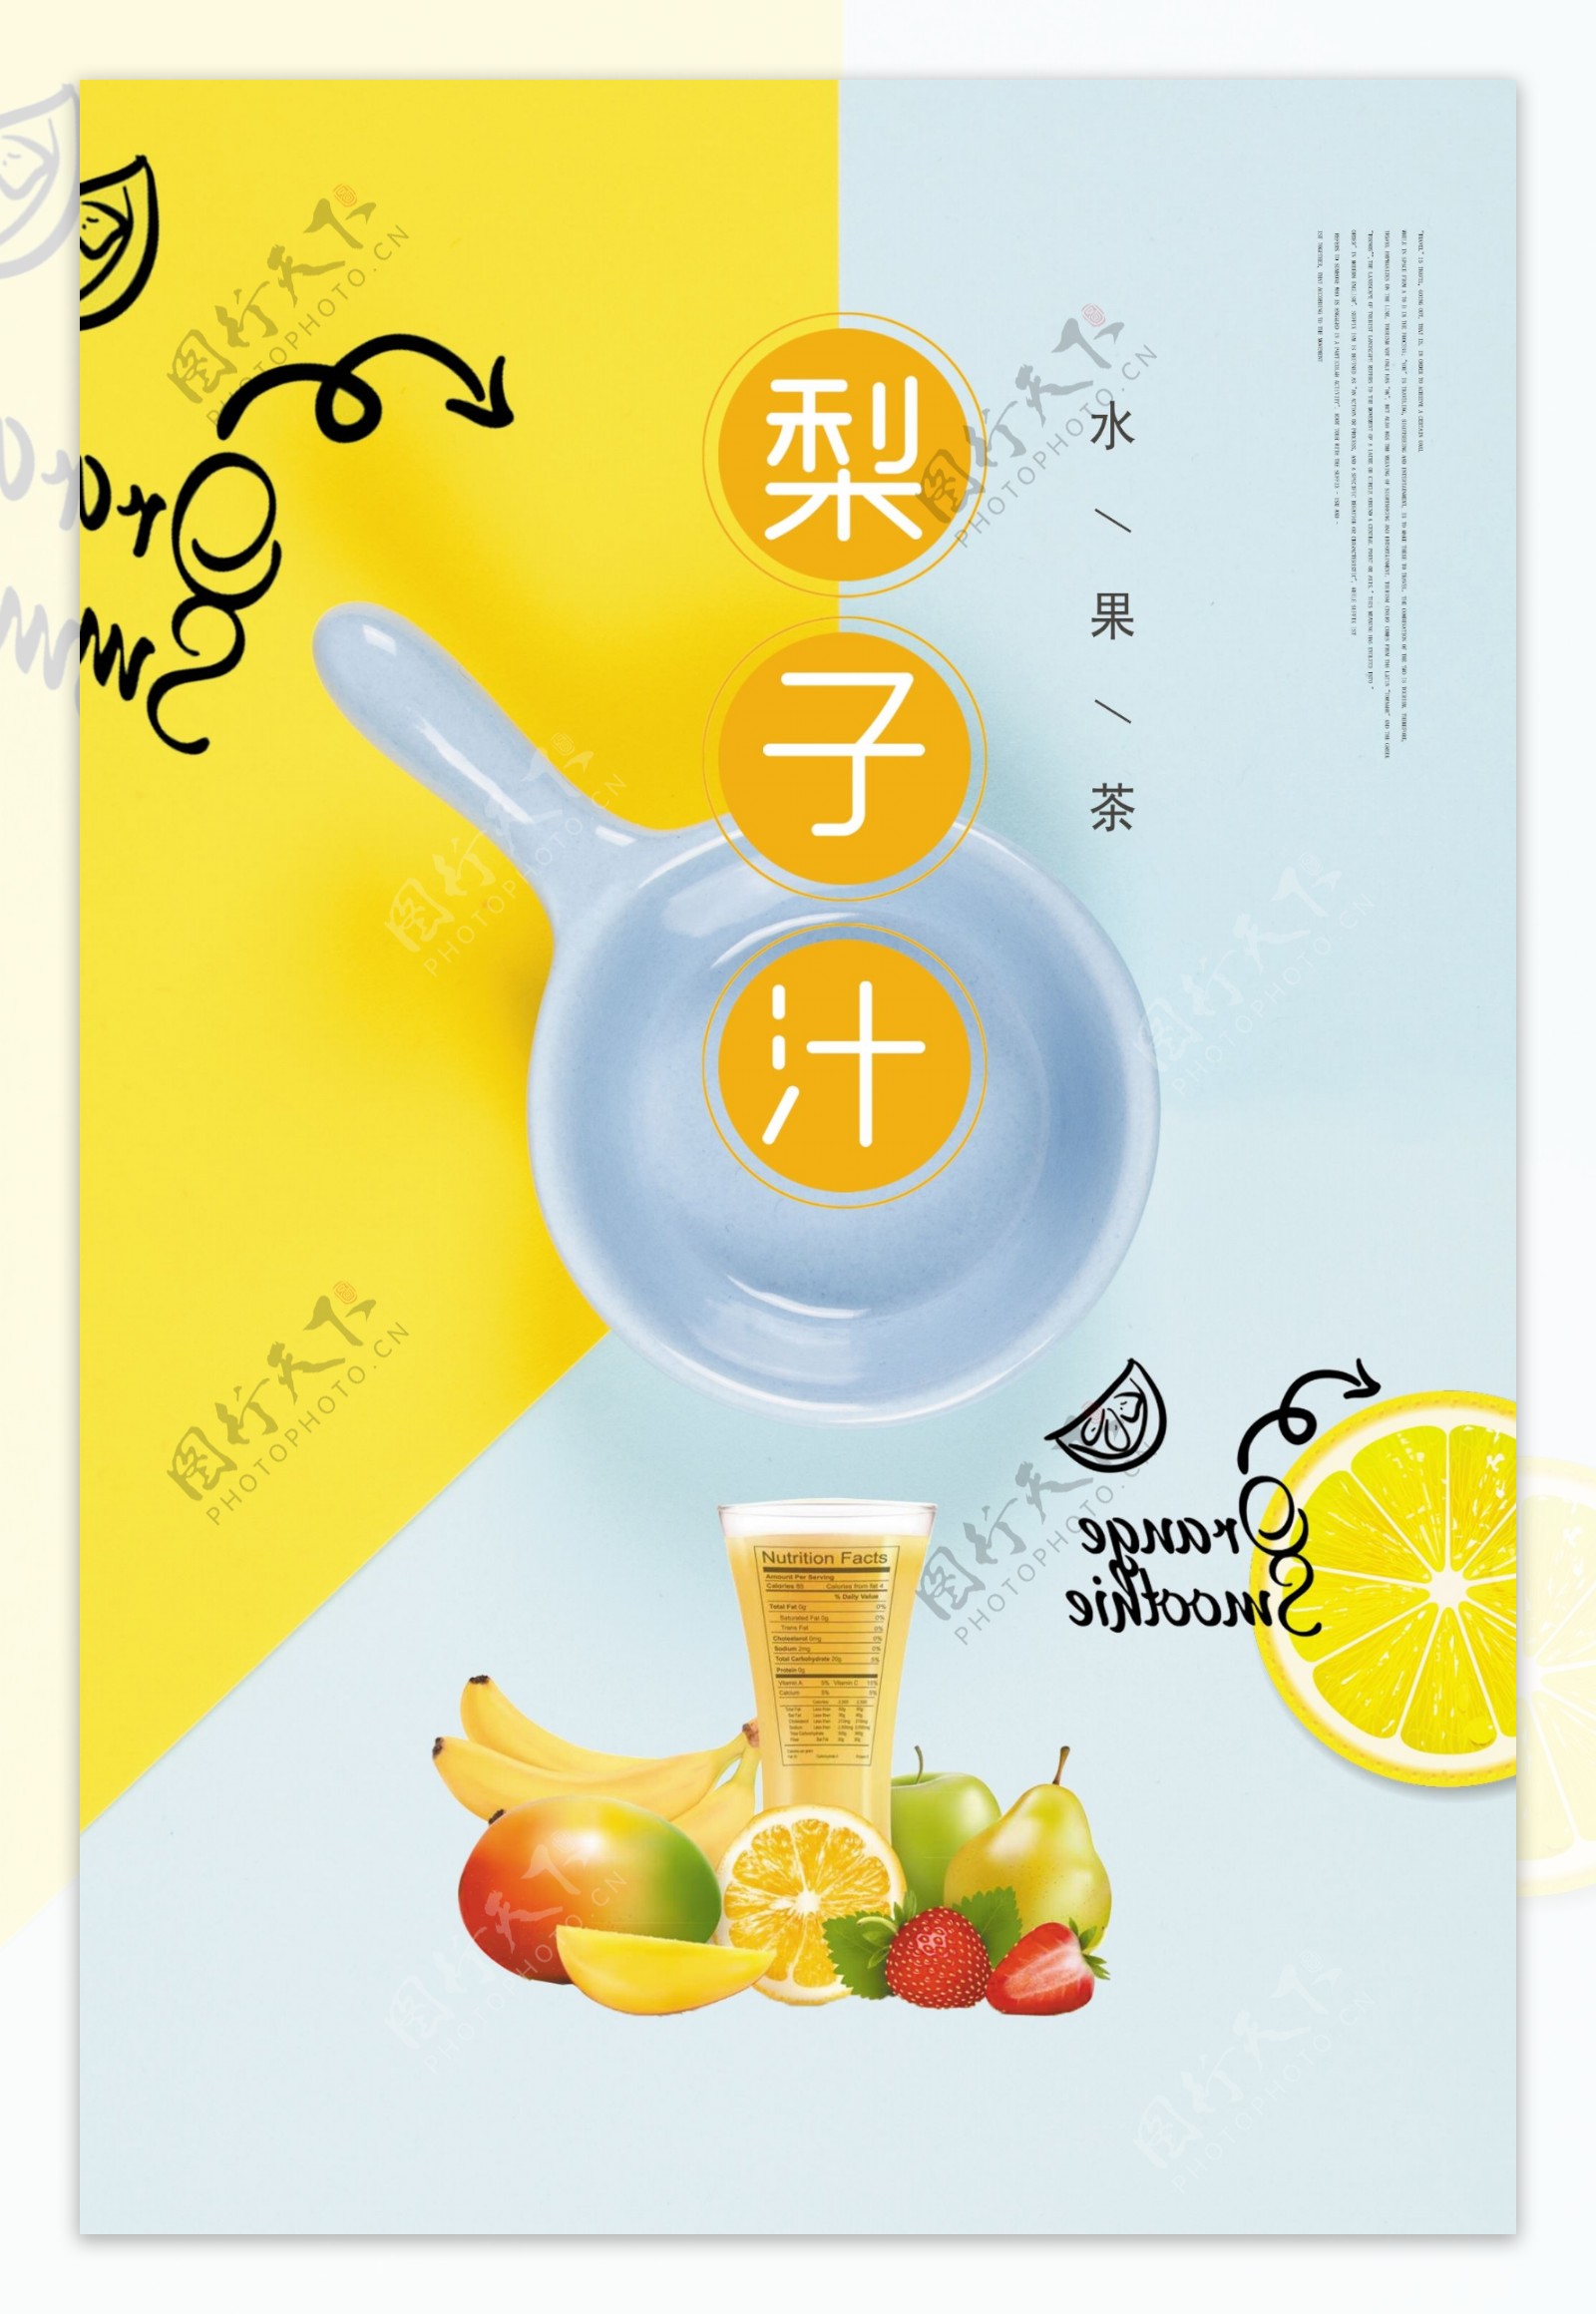 时尚梨子汁新鲜果汁饮料海报